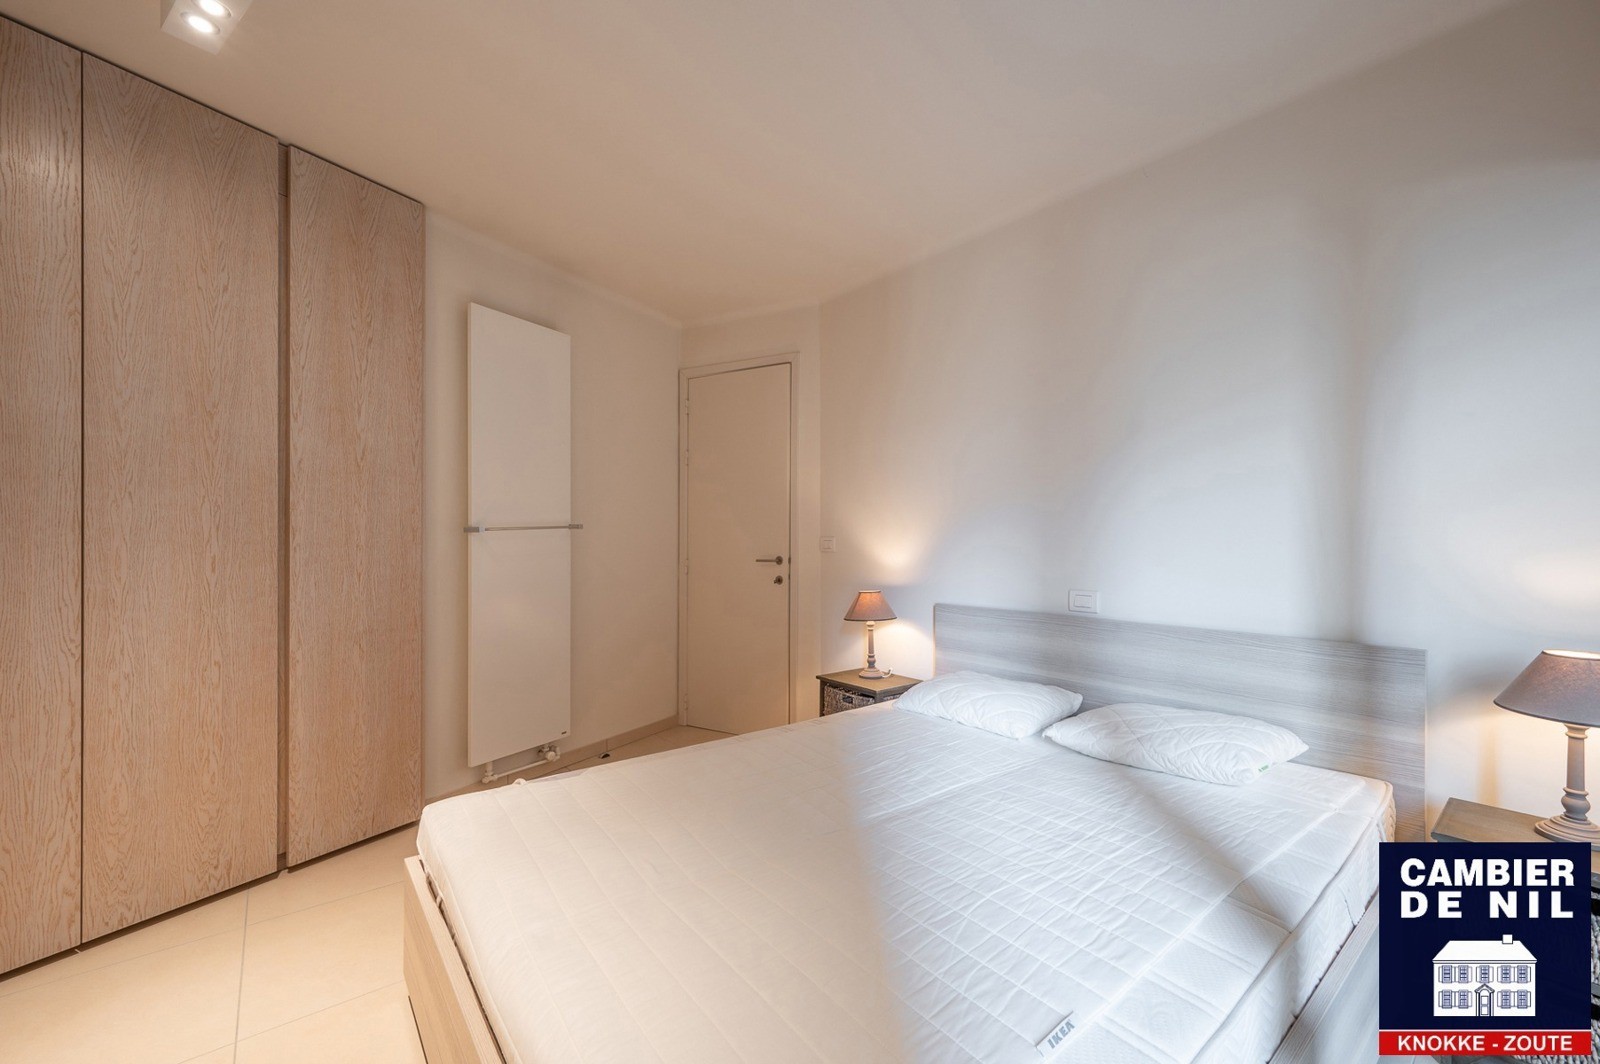 MEUBLÉ : Appartement spacieux avec vue mer et 4 chambres à coucher à Duinbergen ! 10